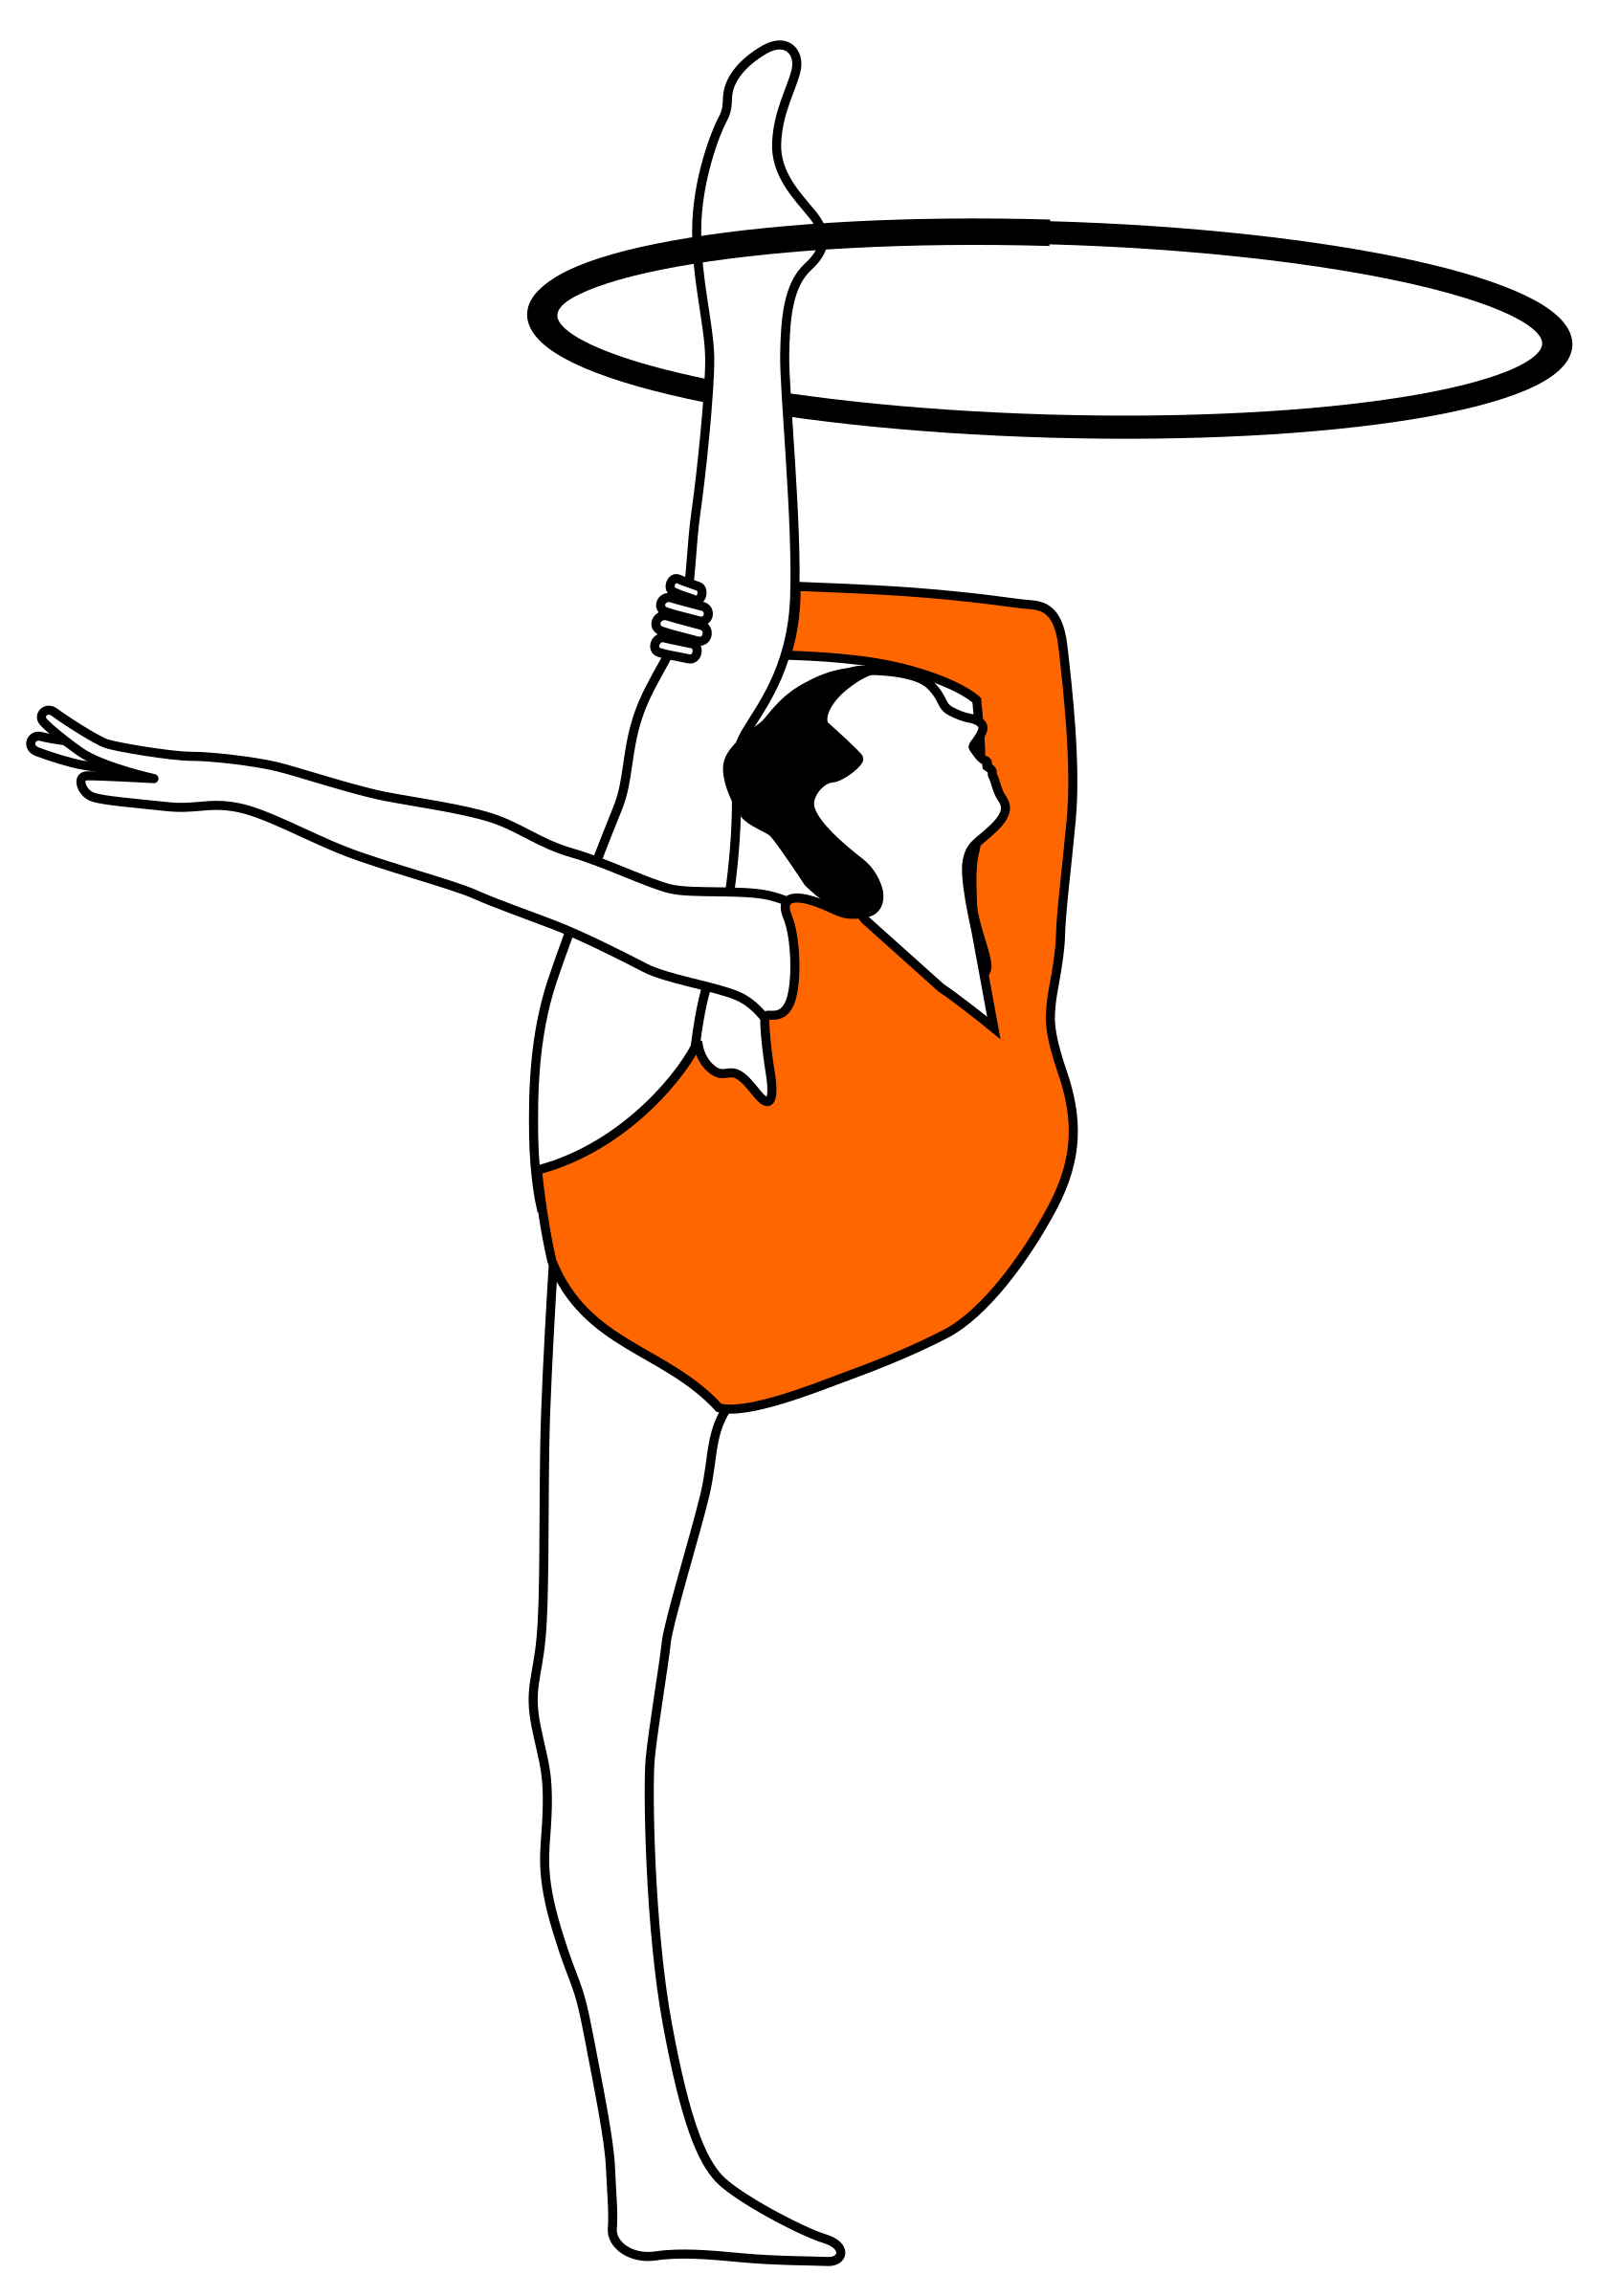 Gymnast clipart person balance. Rhythmic gymnastics with bow